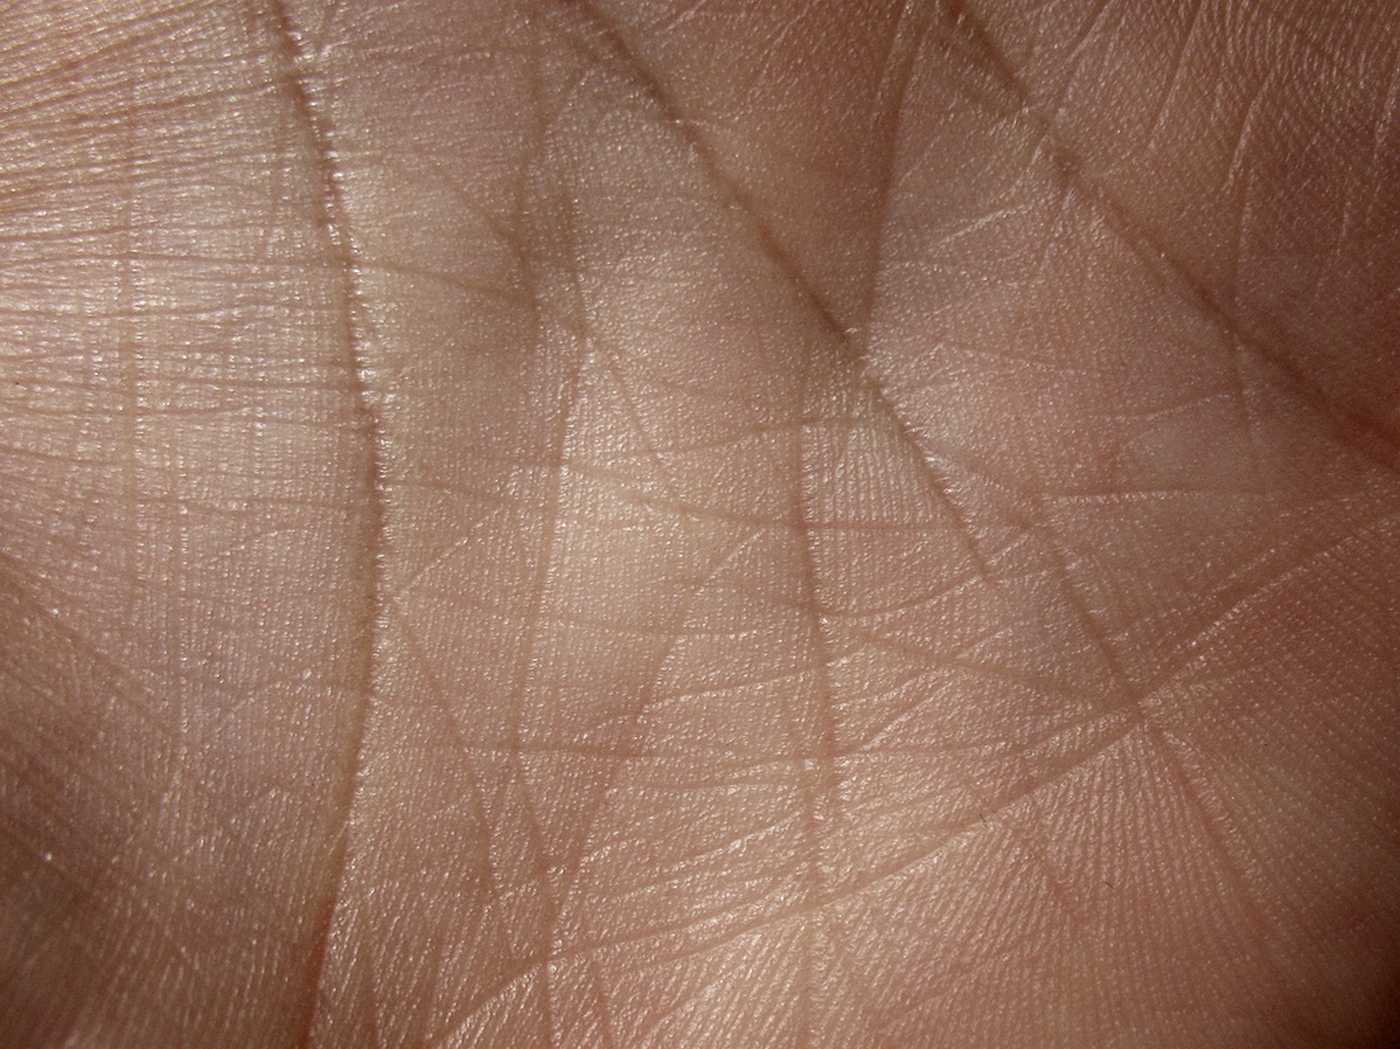 Une peau artificielle arrivera-t-elle un jour à imiter la peau humaine ? Le chemin est encore long mais des avancées importantes ont eu lieu. © Caleb Kimbrough, Flickr, CC by 2.0